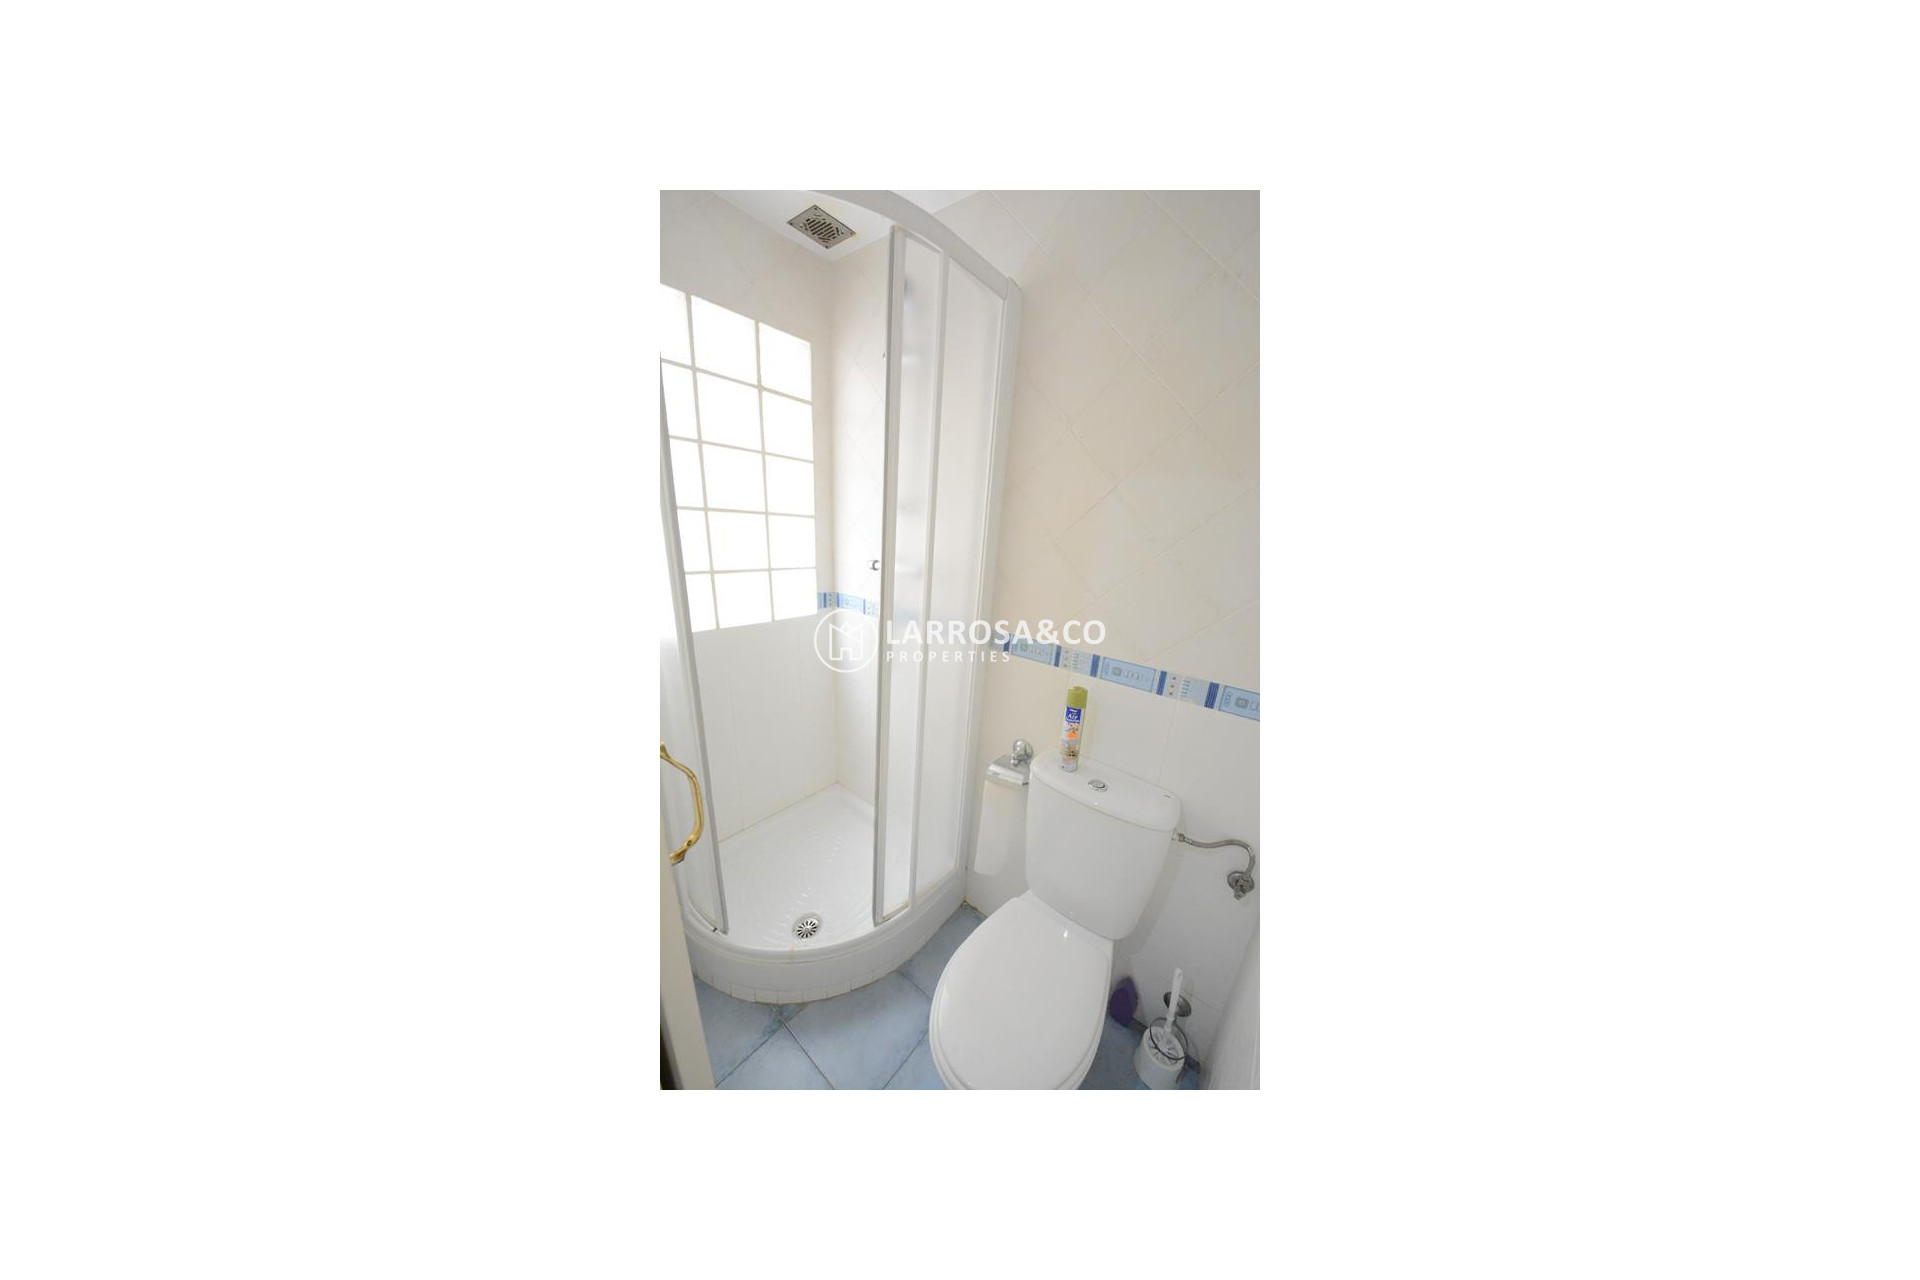 resale-duplex-guardamar-beach-bathroom-1-rv2107